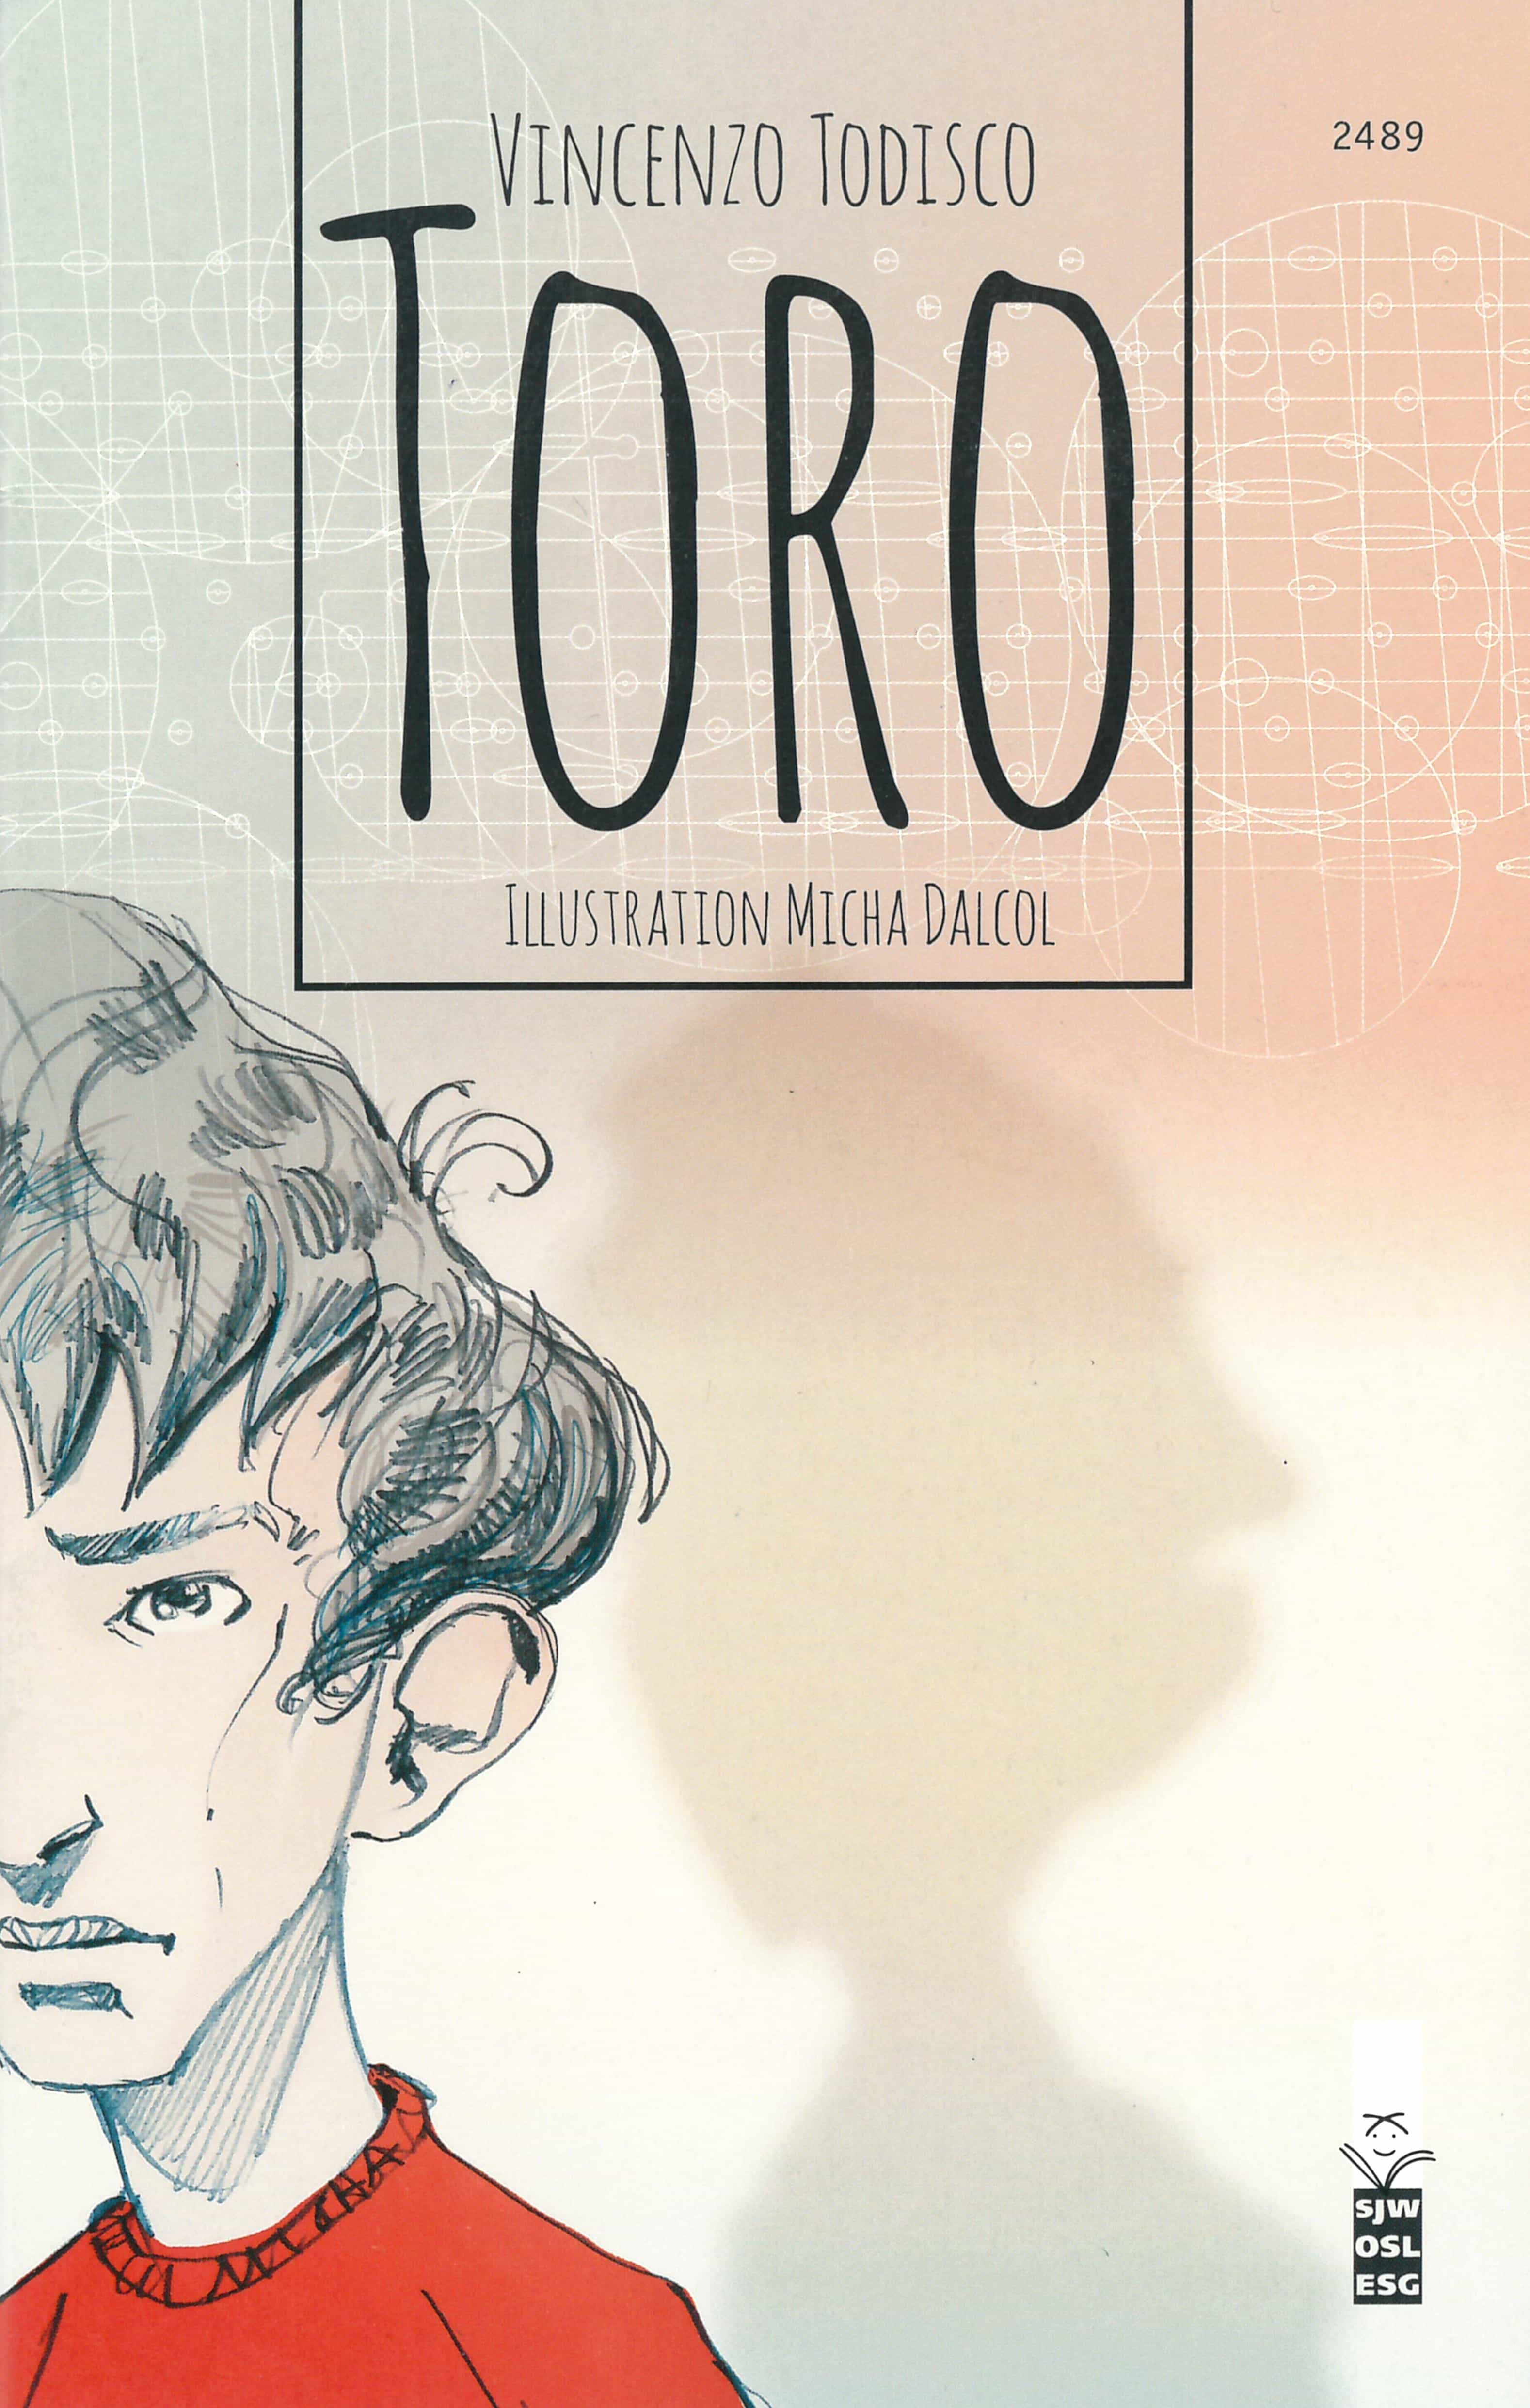 Toro, ein Jugendbuch von Vincenzo Todisco, Illustration von Micha Dalcol, SJW Verlag, Migration, Mobbing & Toleranz